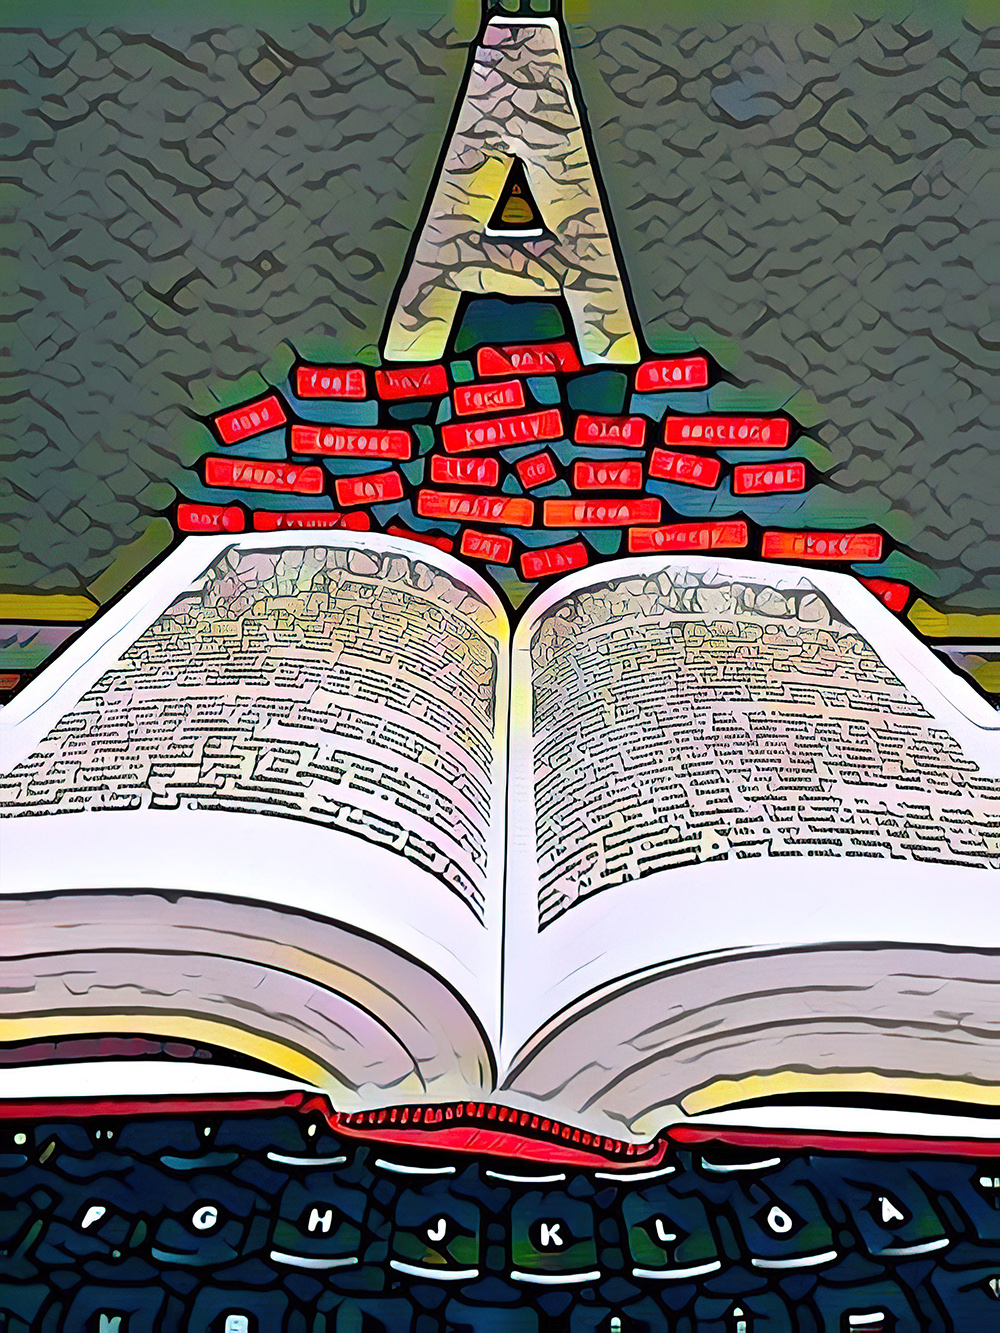 Auf einer schwarzen Tastatur am unteren Bildrand liegt ein aufgeschlagenes Buch, darüber schweben rote Wörter in Form von Etiketten, über denen der Buchstabe A schwebt